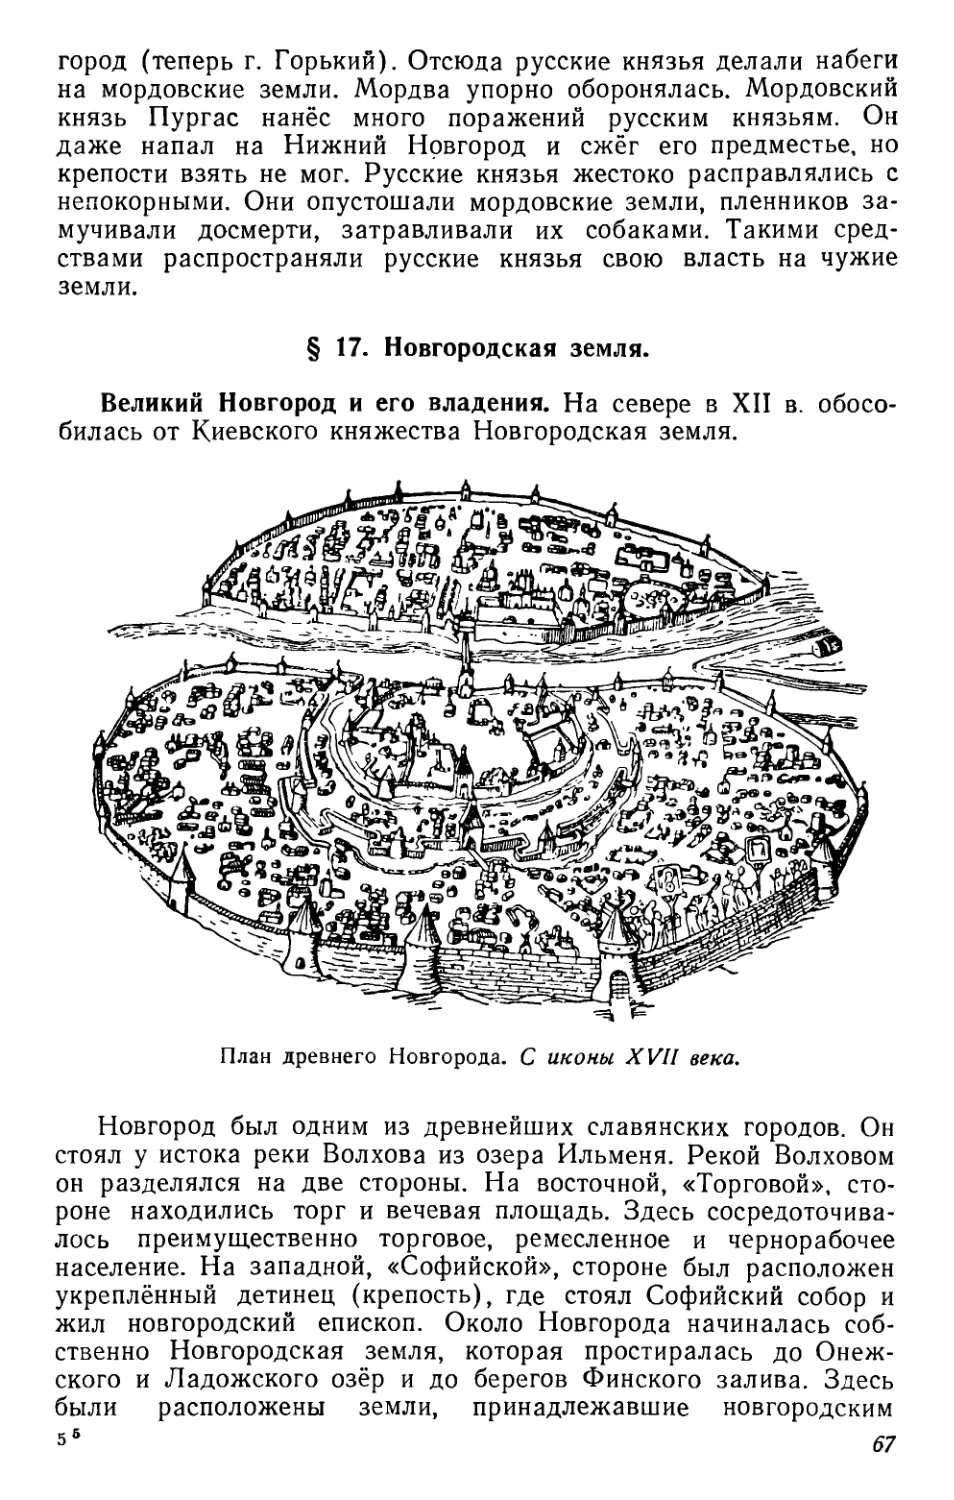 § 17. Новгородская земля